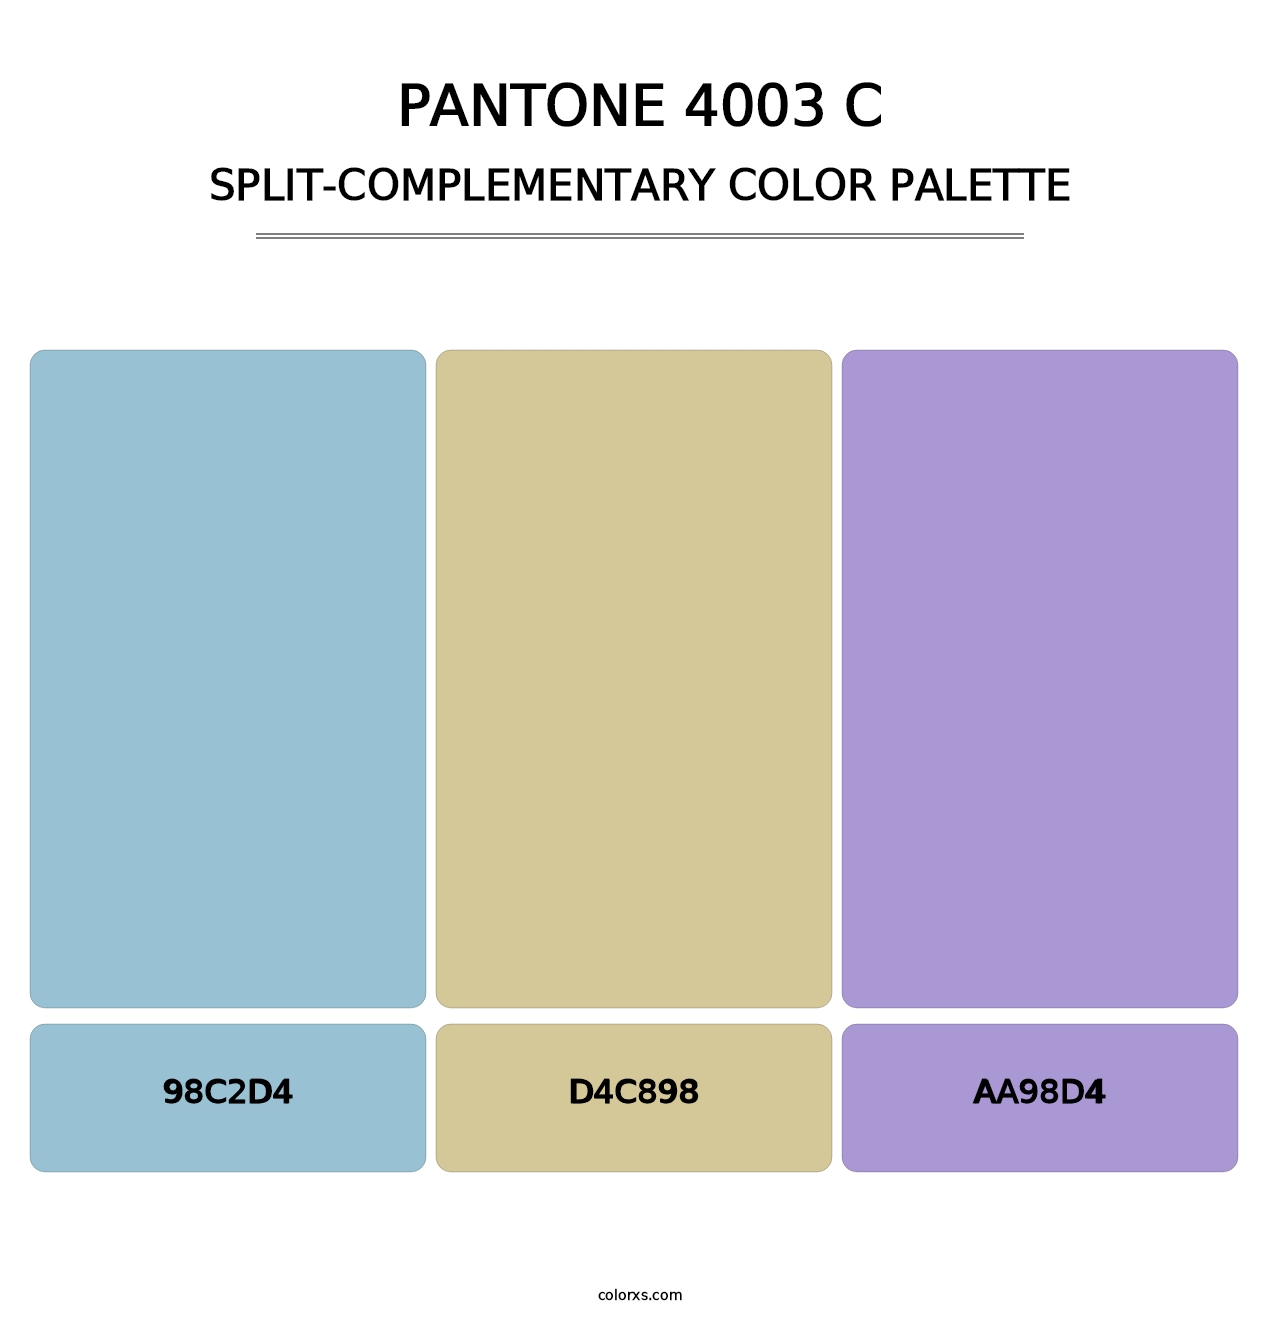 PANTONE 4003 C - Split-Complementary Color Palette